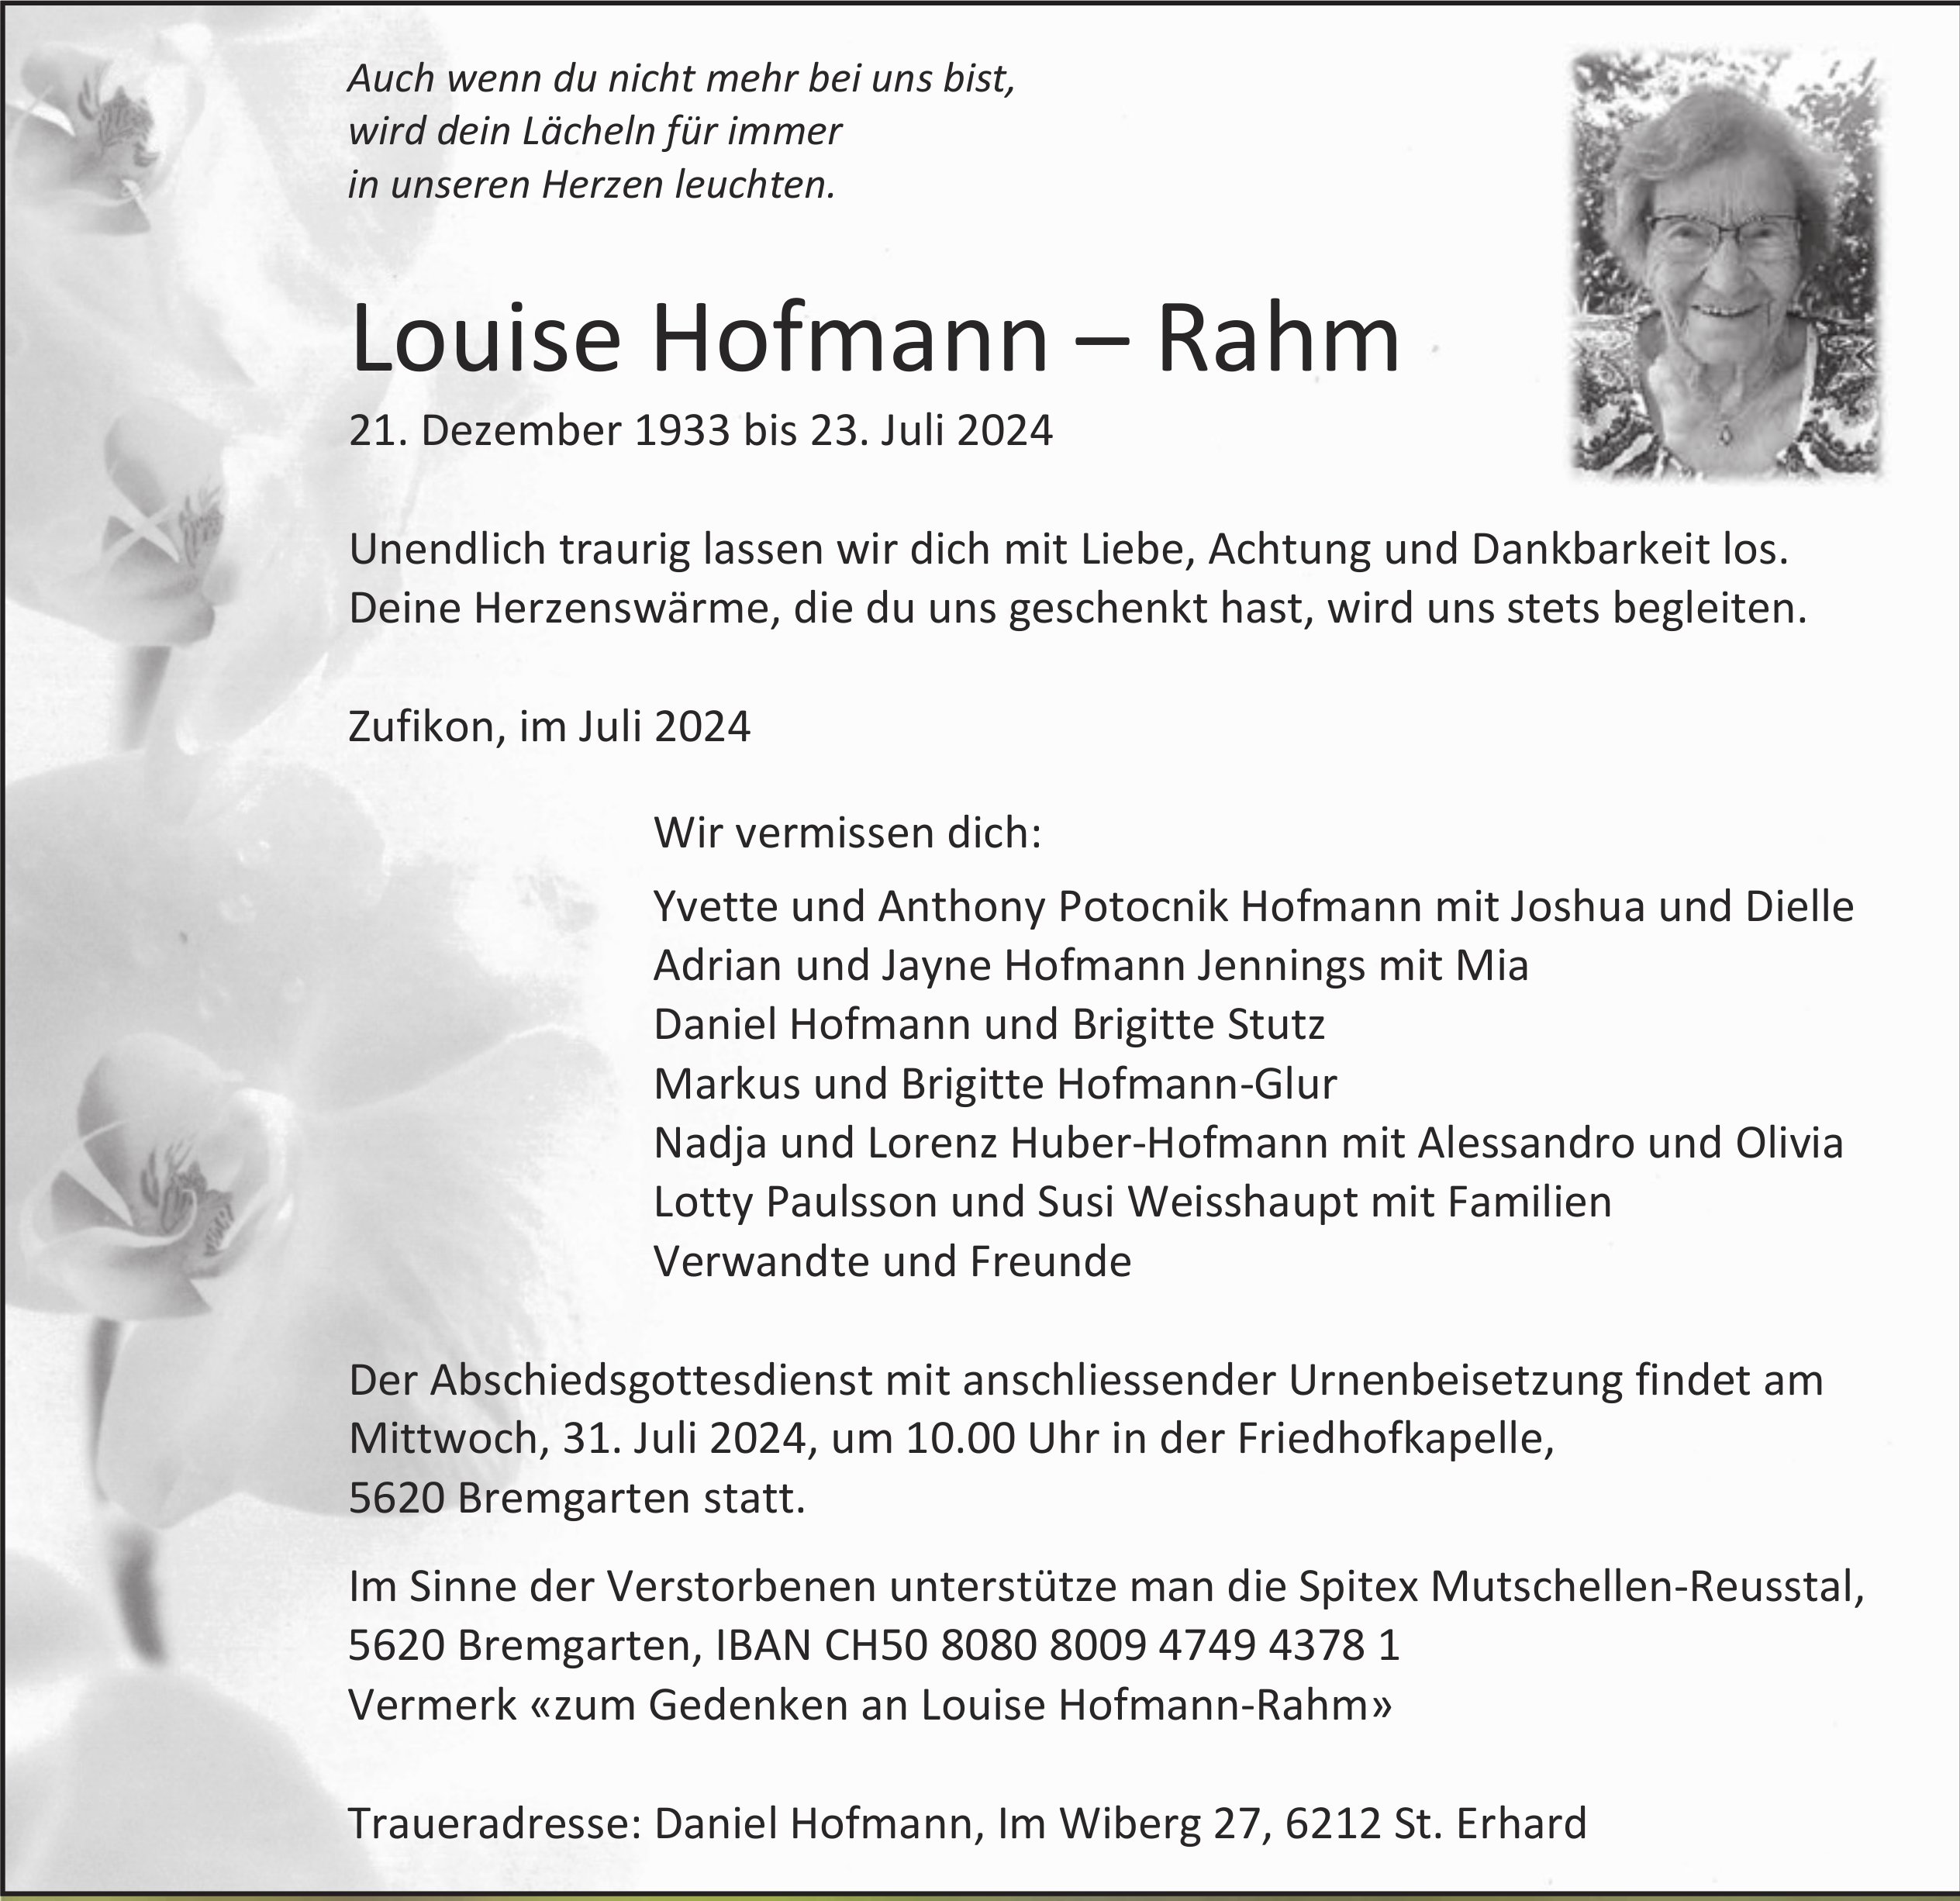 Louise Hofmann – Rahm, Juli 2024 / TA